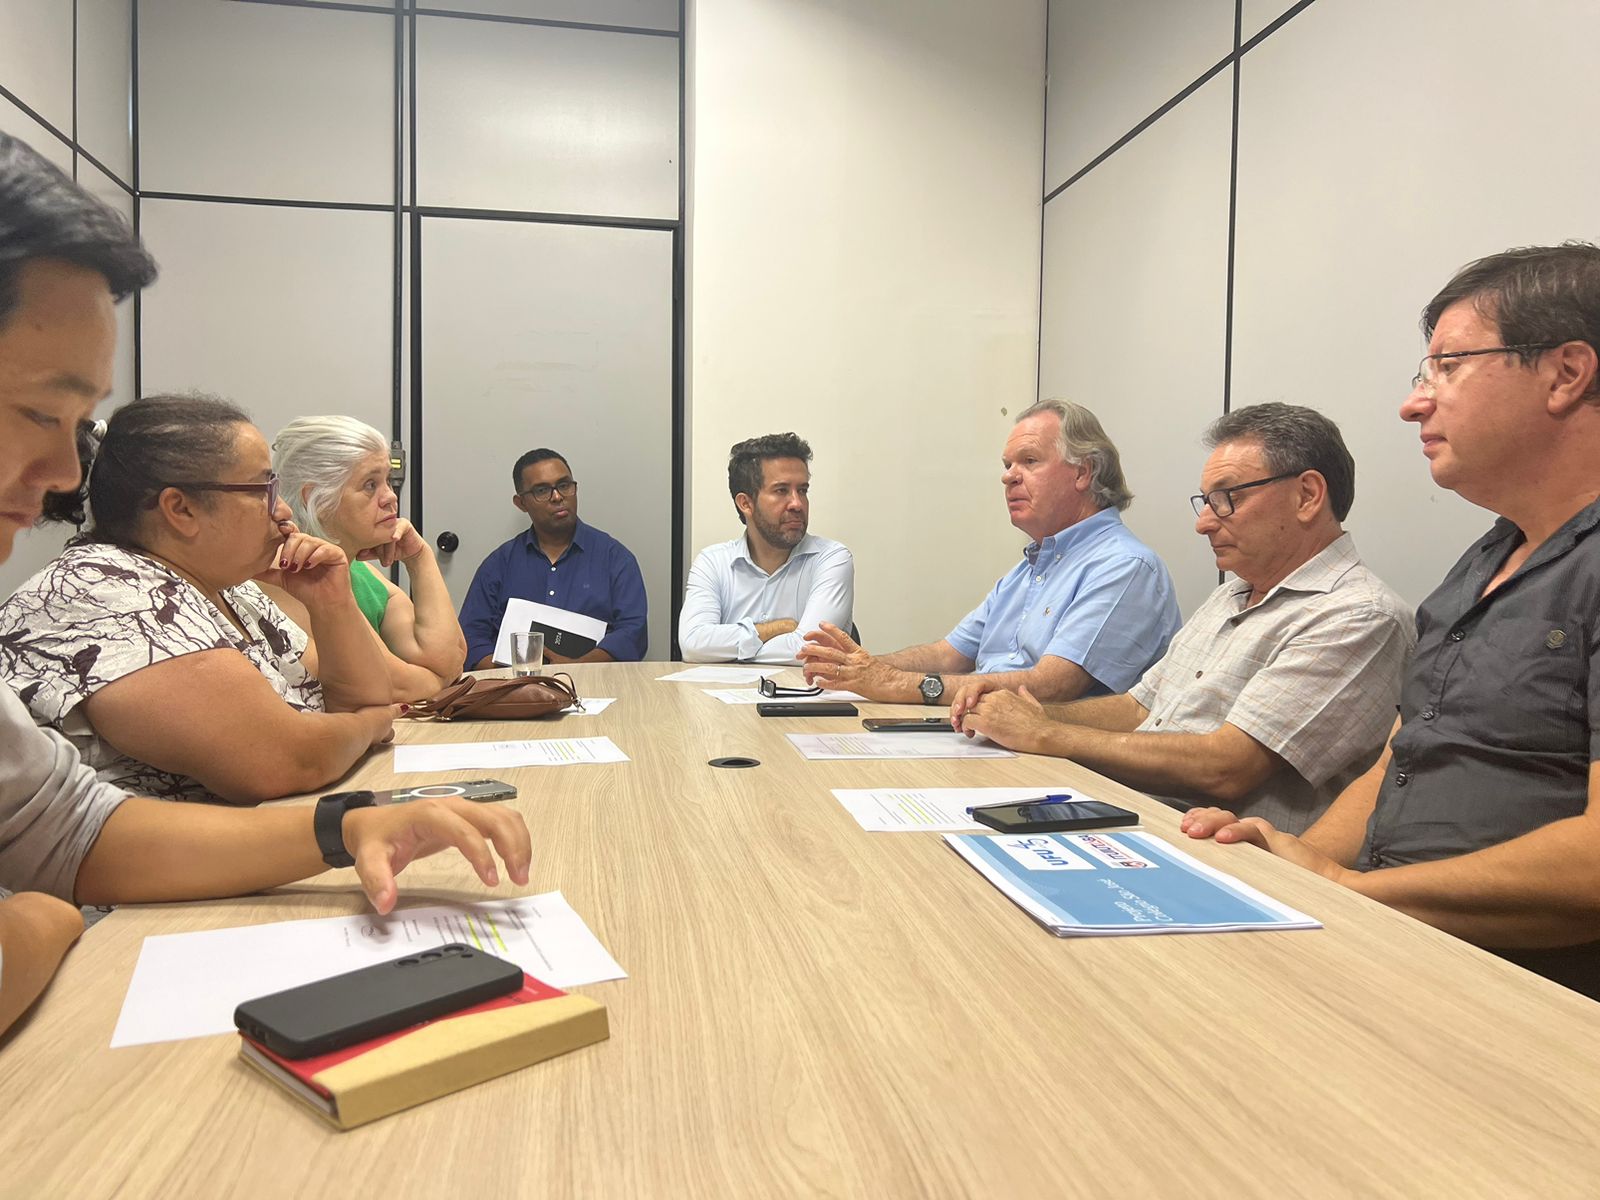 Imagem da reunião, com oito pessoas sentadas à mesa; deputado André Janones (com barba e camisa branca) aparece na cabeceira; à direita dele (com camisa azul clara e gesticulando), está o reitor Valder Steffen